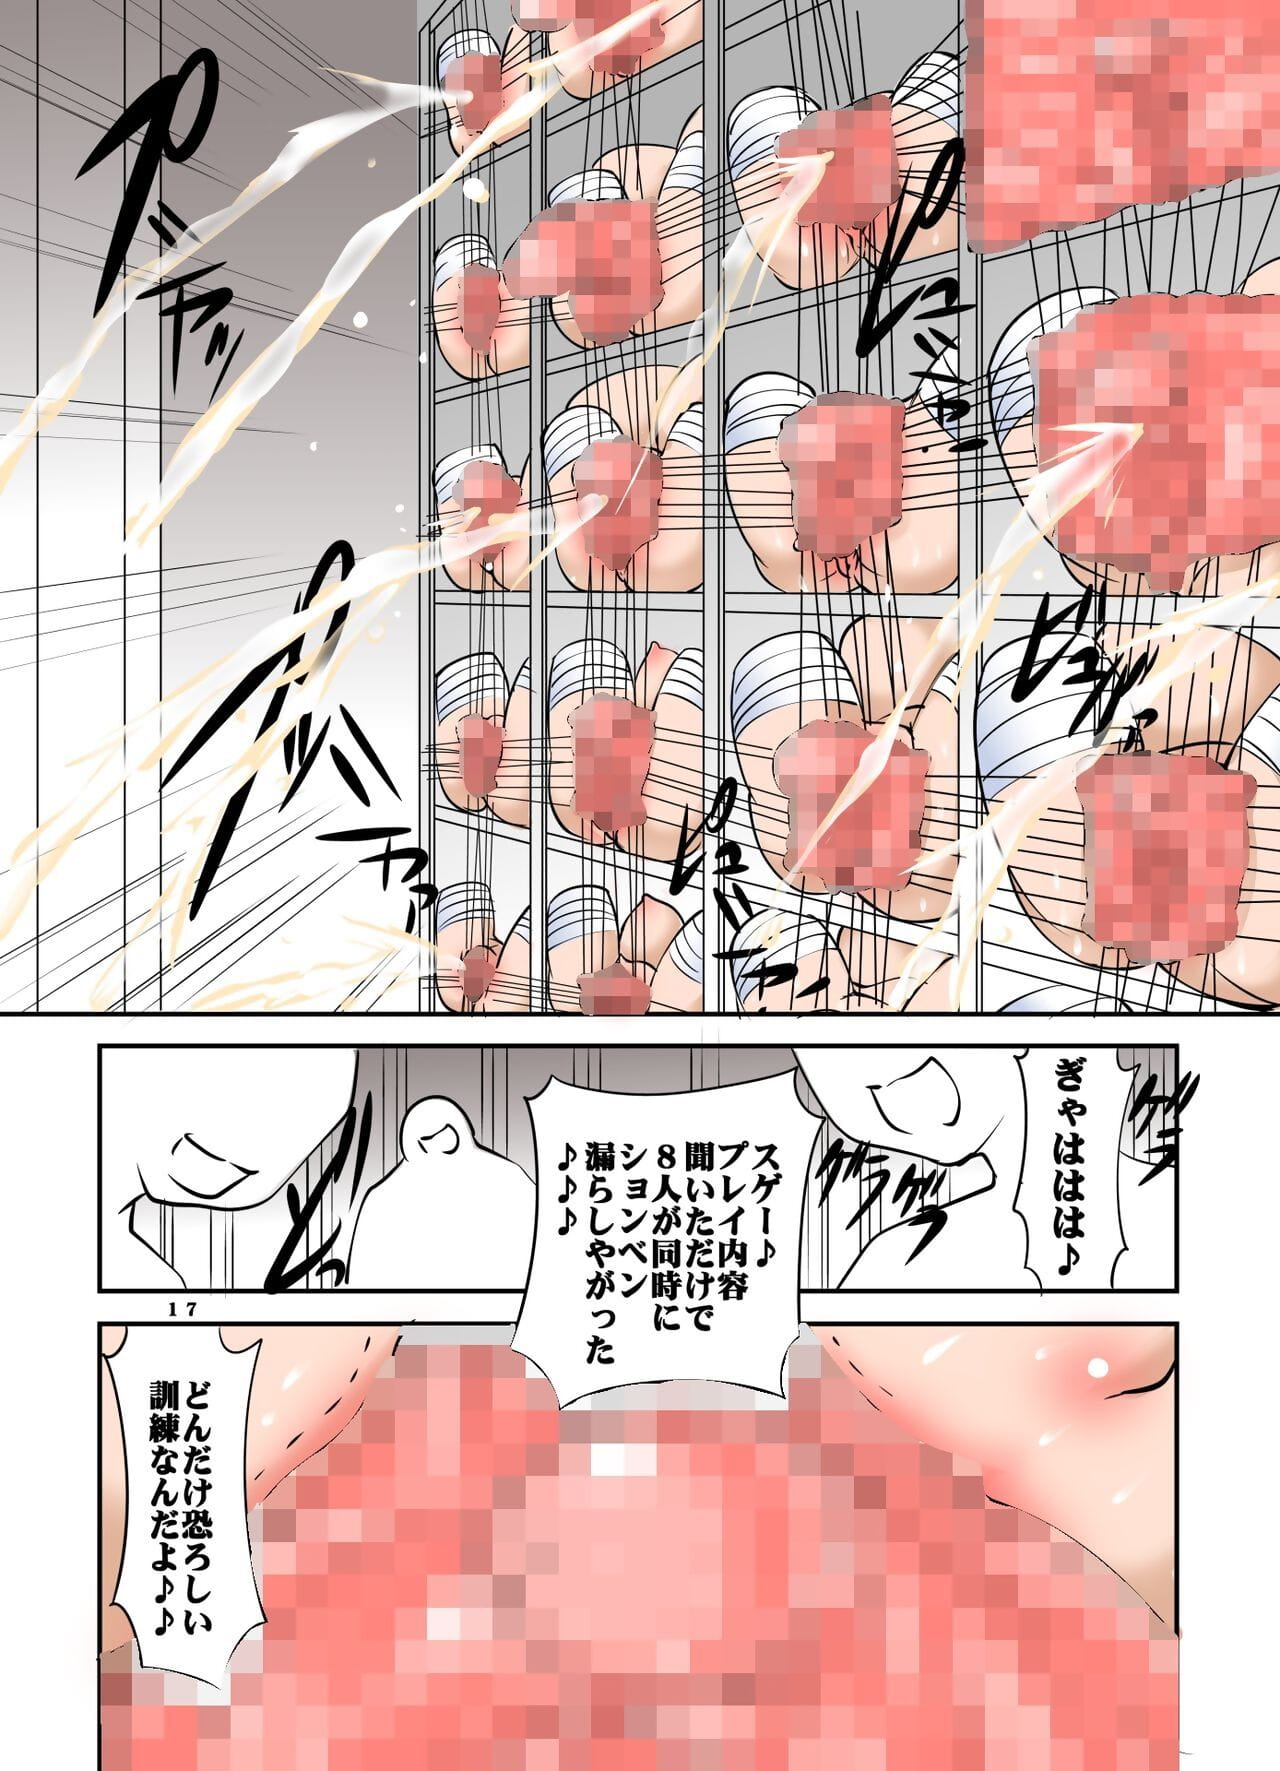 shishi setsudan Shoujo goumon gyakutai kan no cameriera san vol 3 page 1